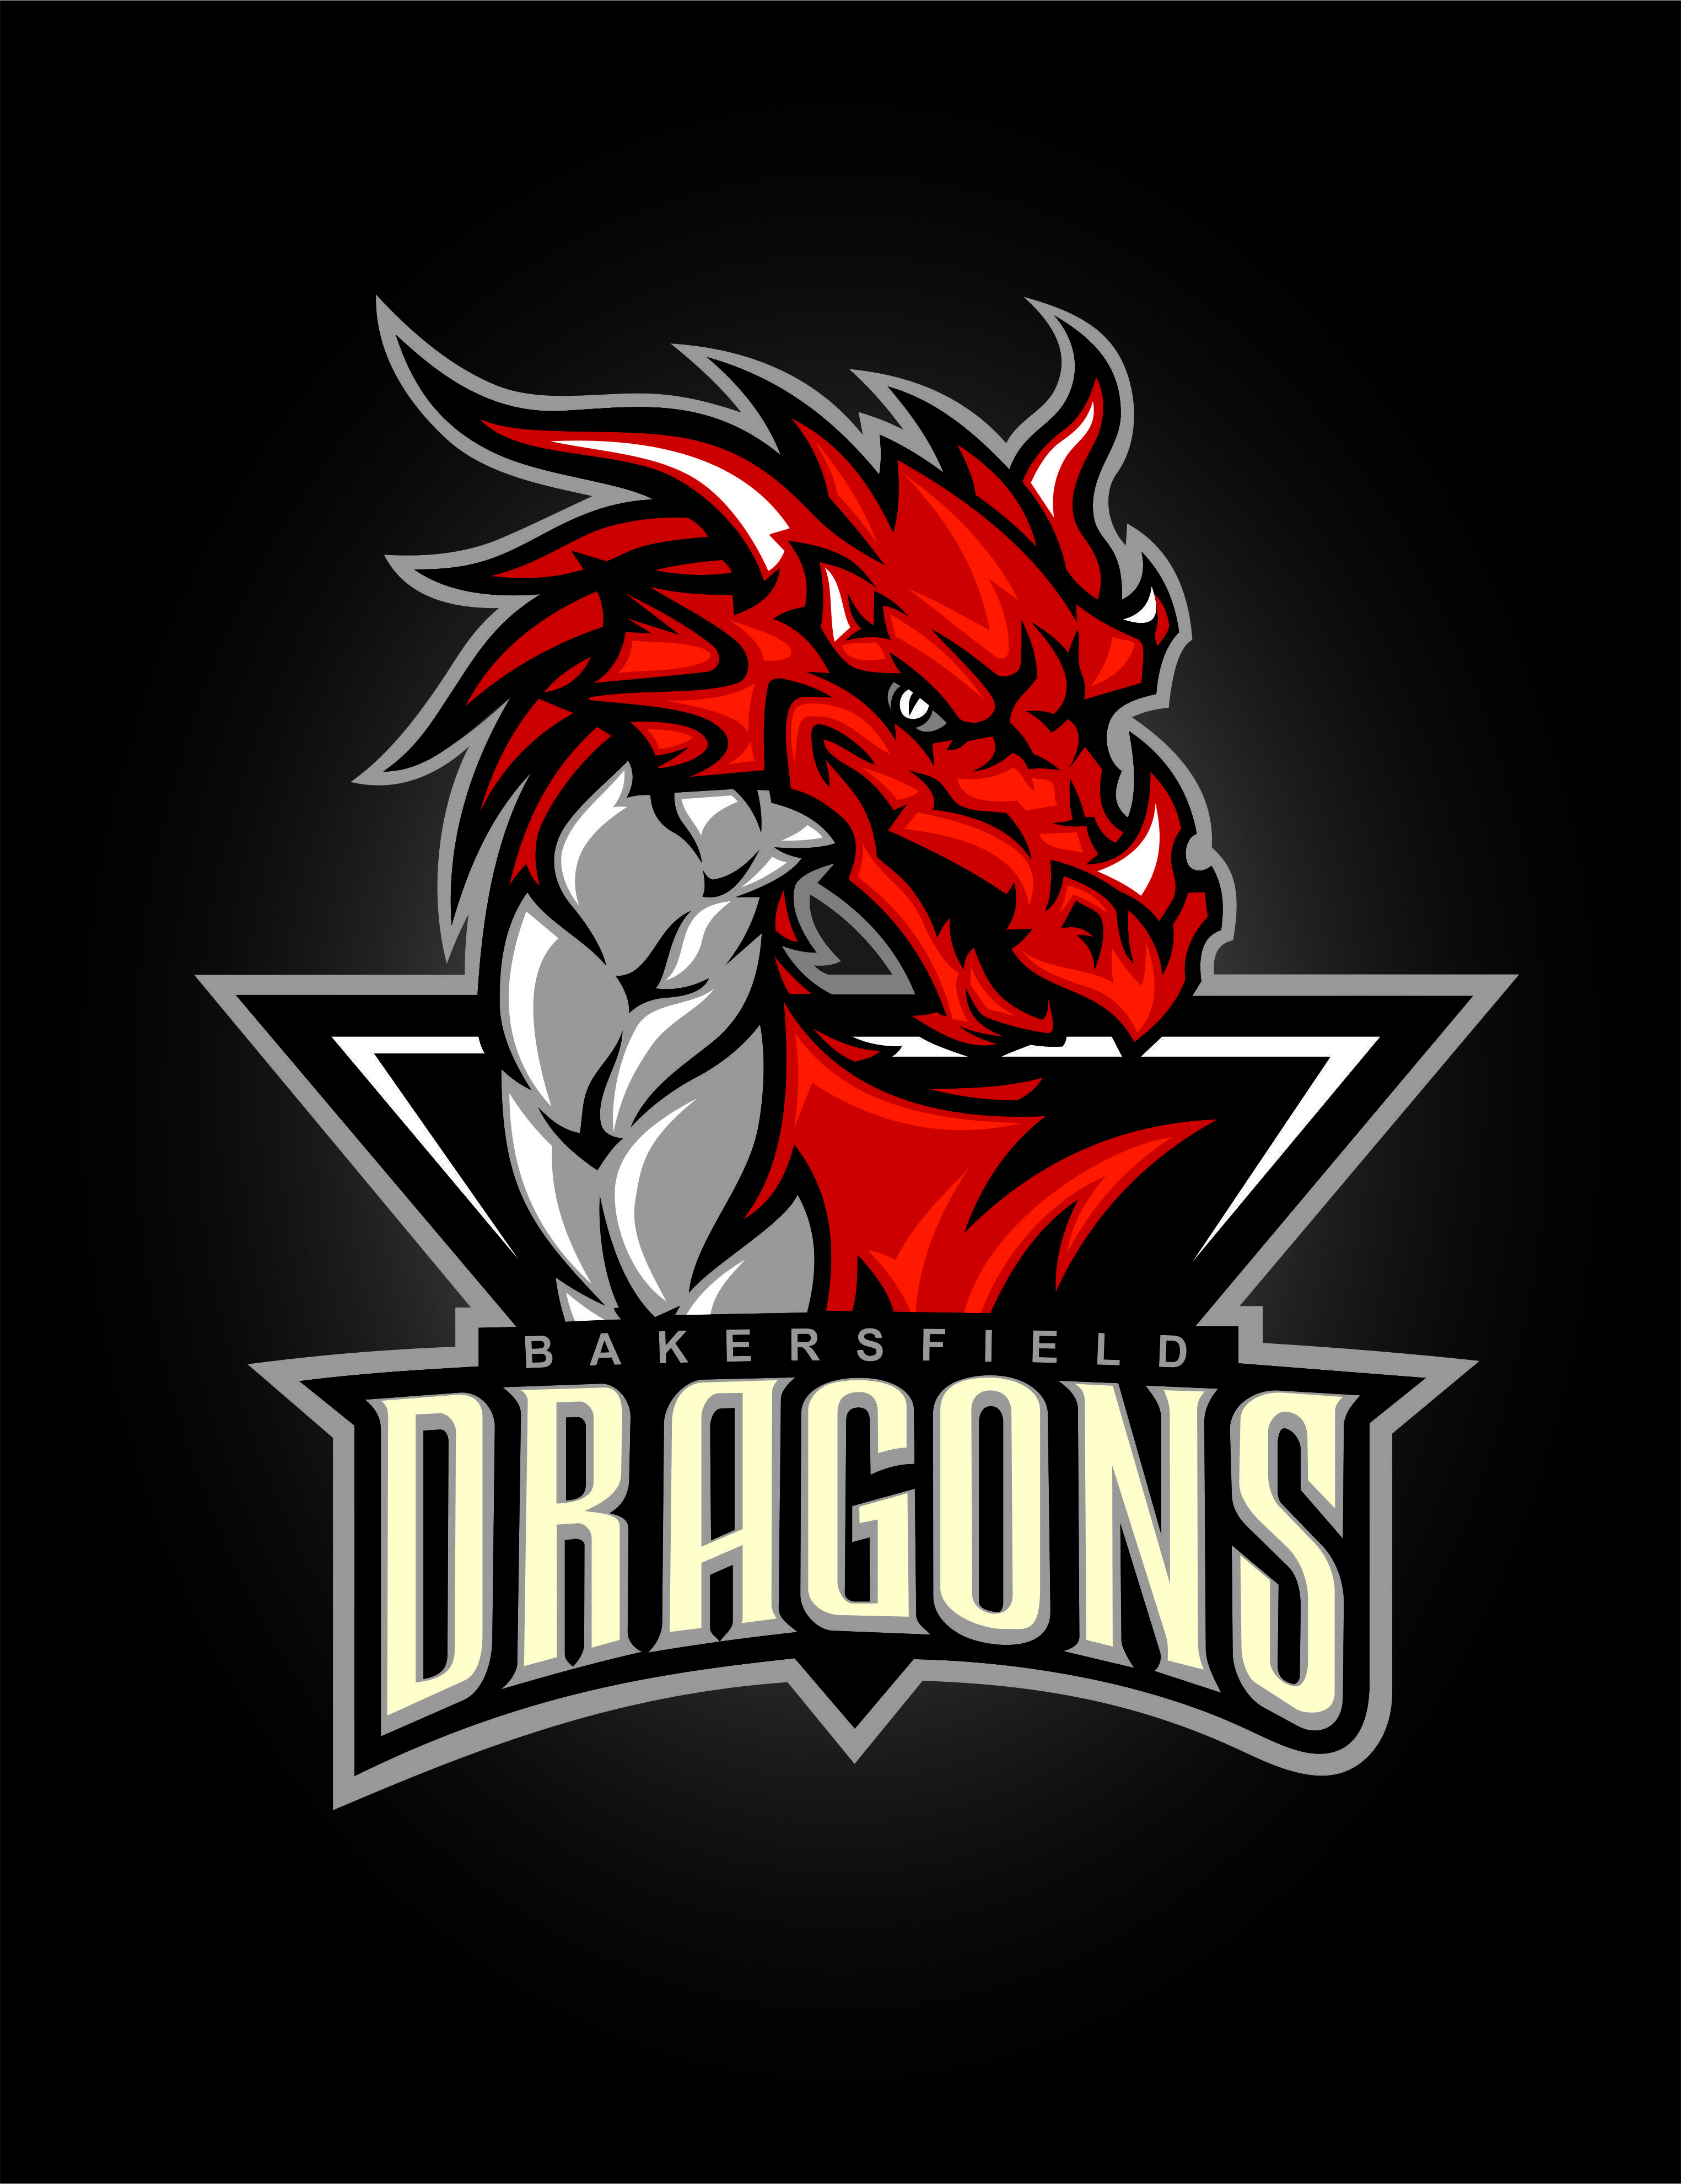 Dragon Soccer Team Logo - Dragón vectorizado. | Soccer team logo | Pinterest | Logo design ...